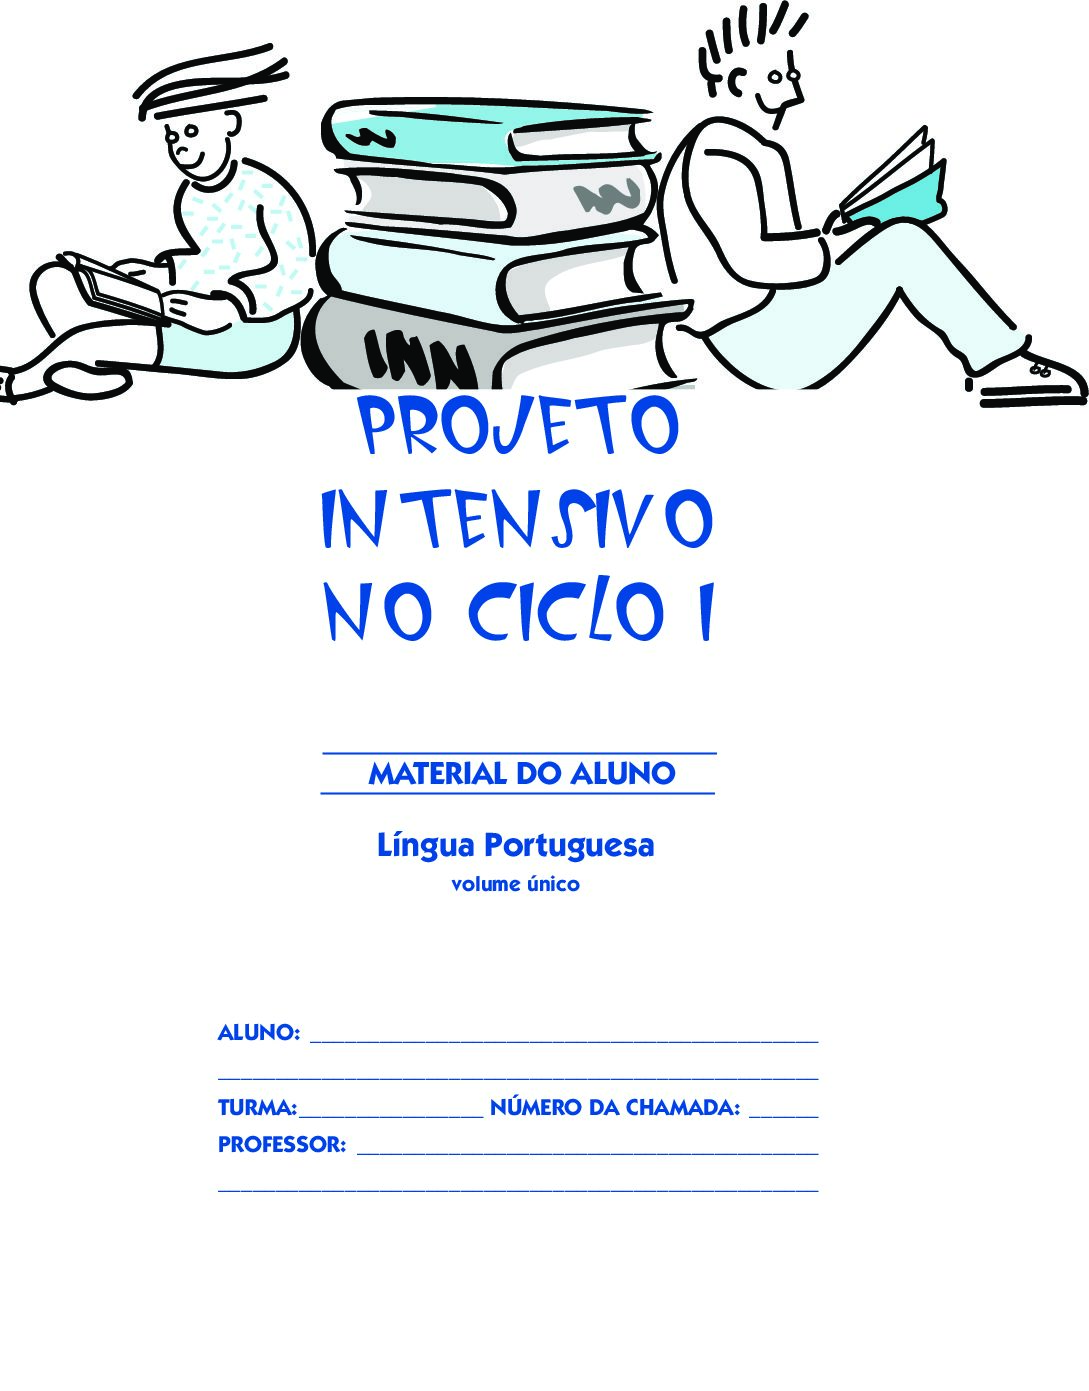 Material com atividades de Língua Portuguesa para os estudantes da sala do Projeto Intensivo do Ciclo I - 4 º ano.